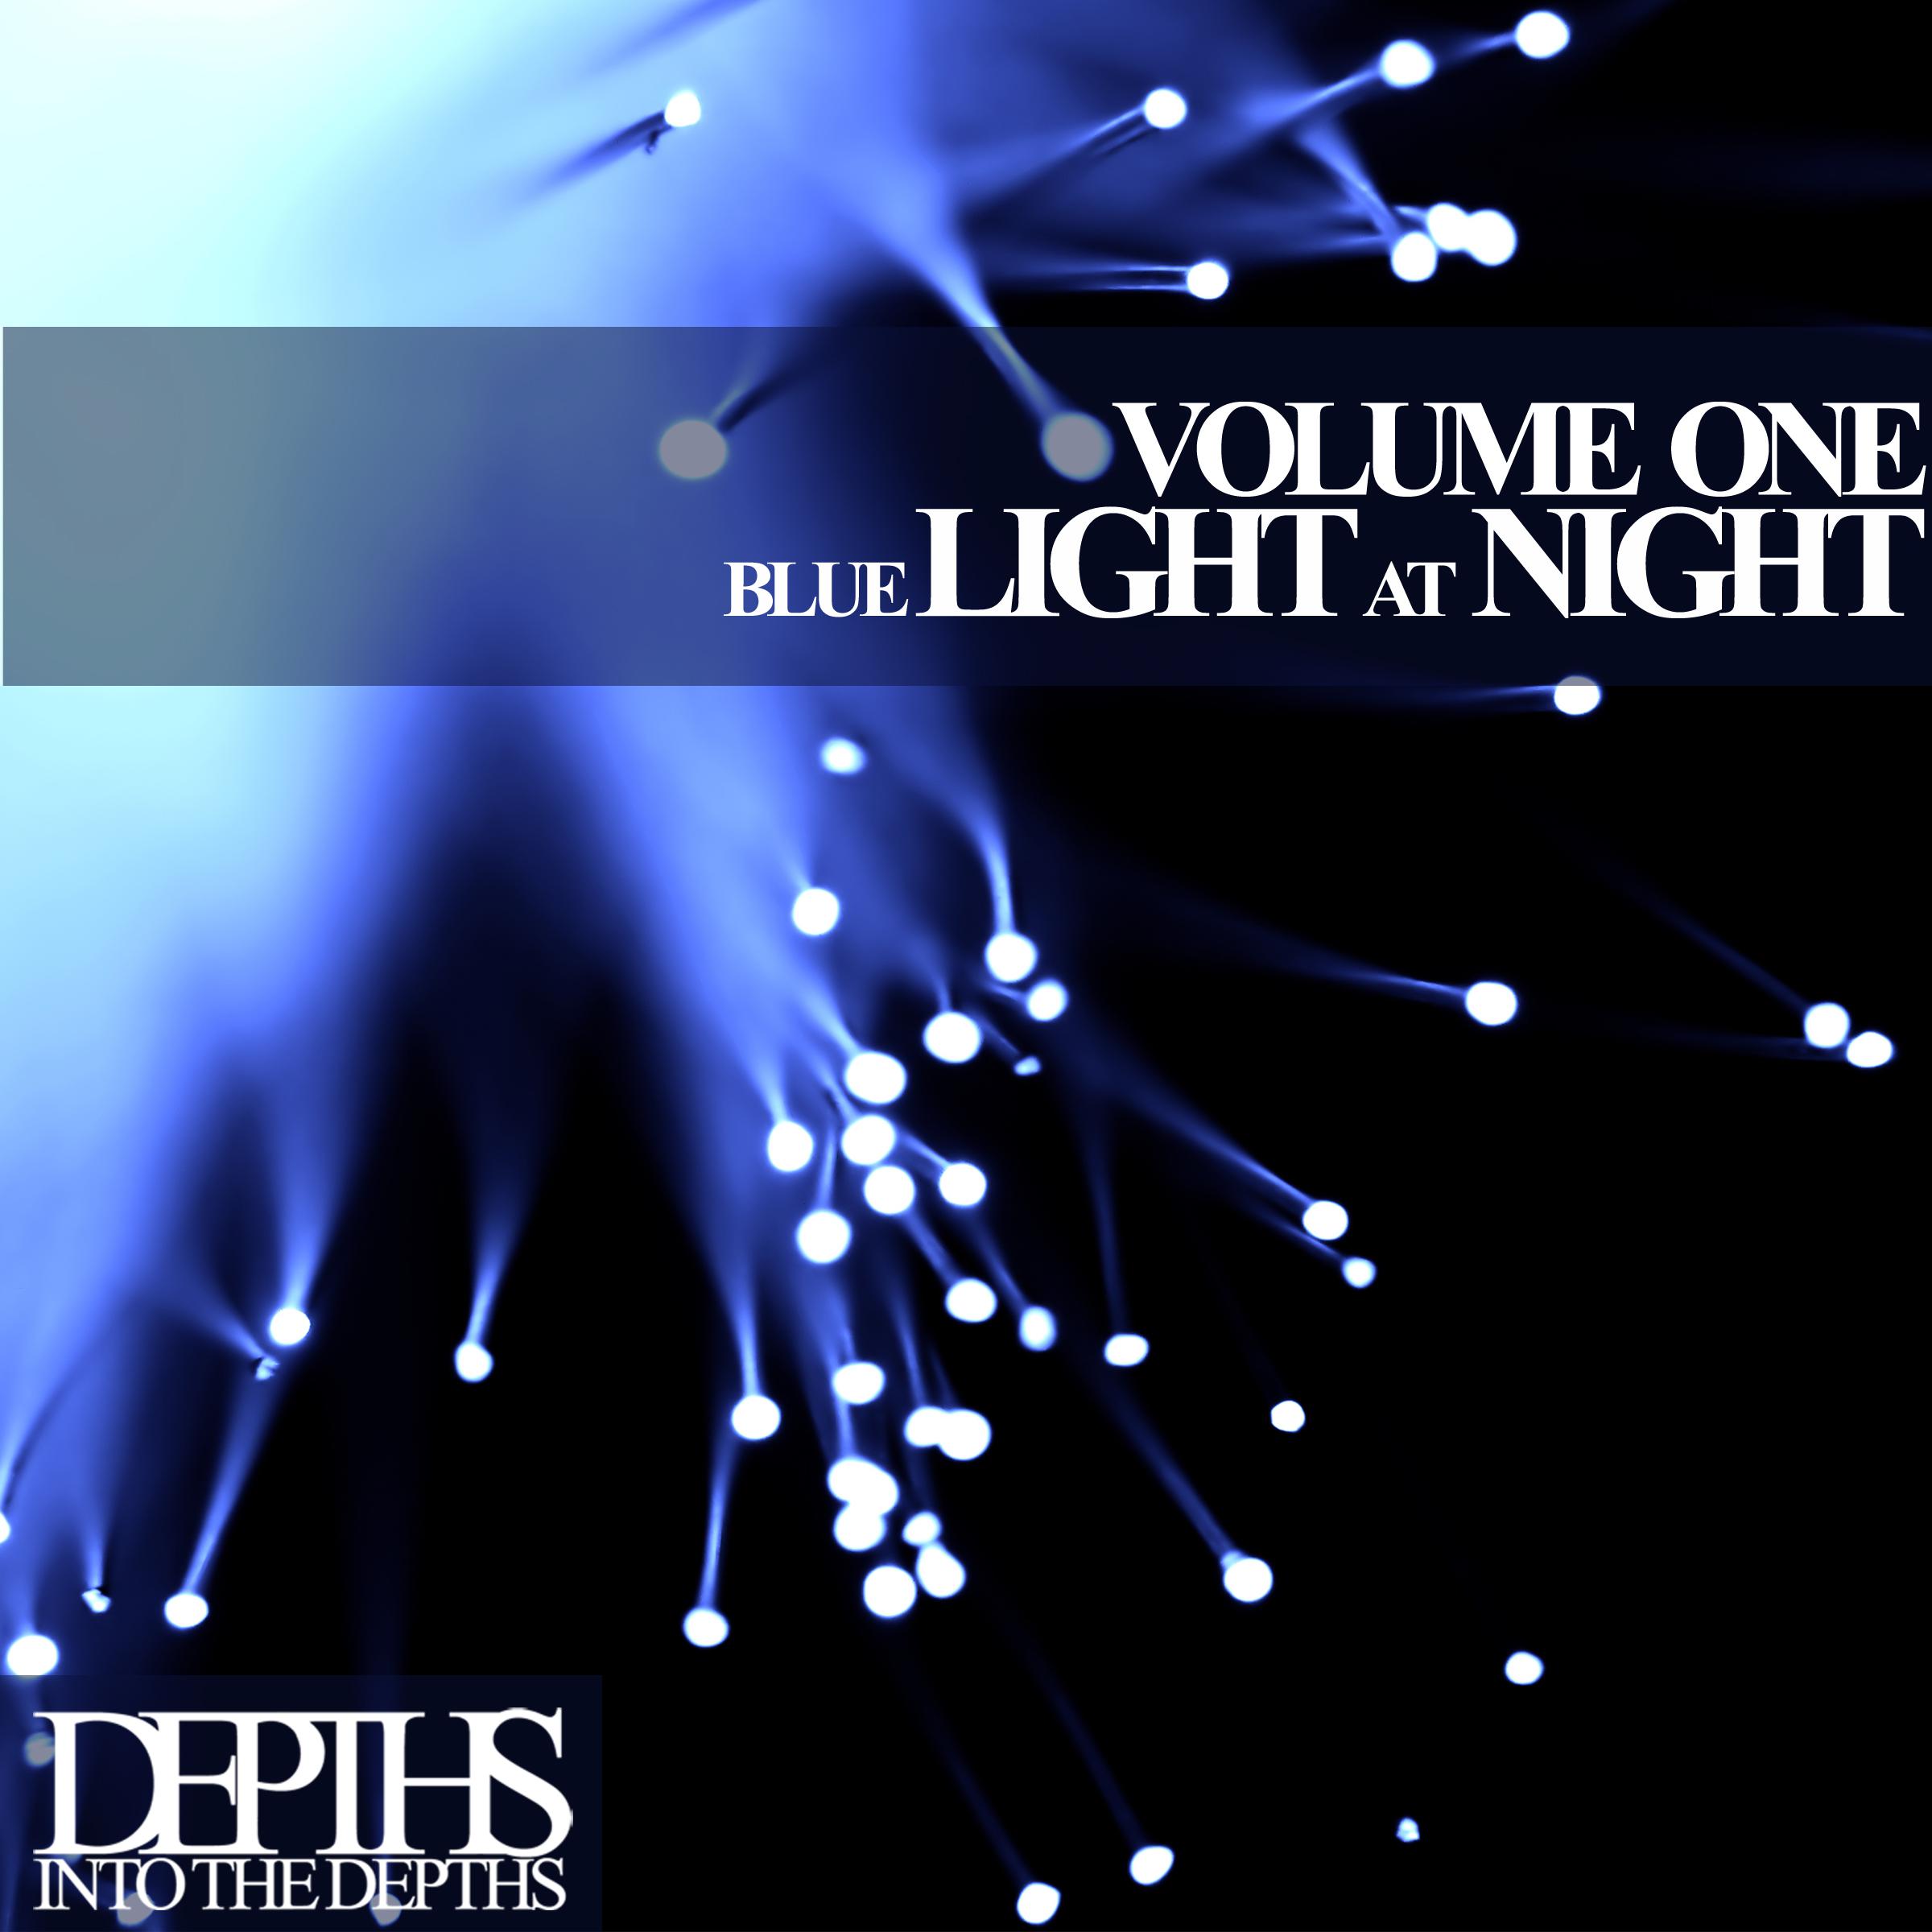 Blue Light At Night, Vol. One - First Class Deep House Blends